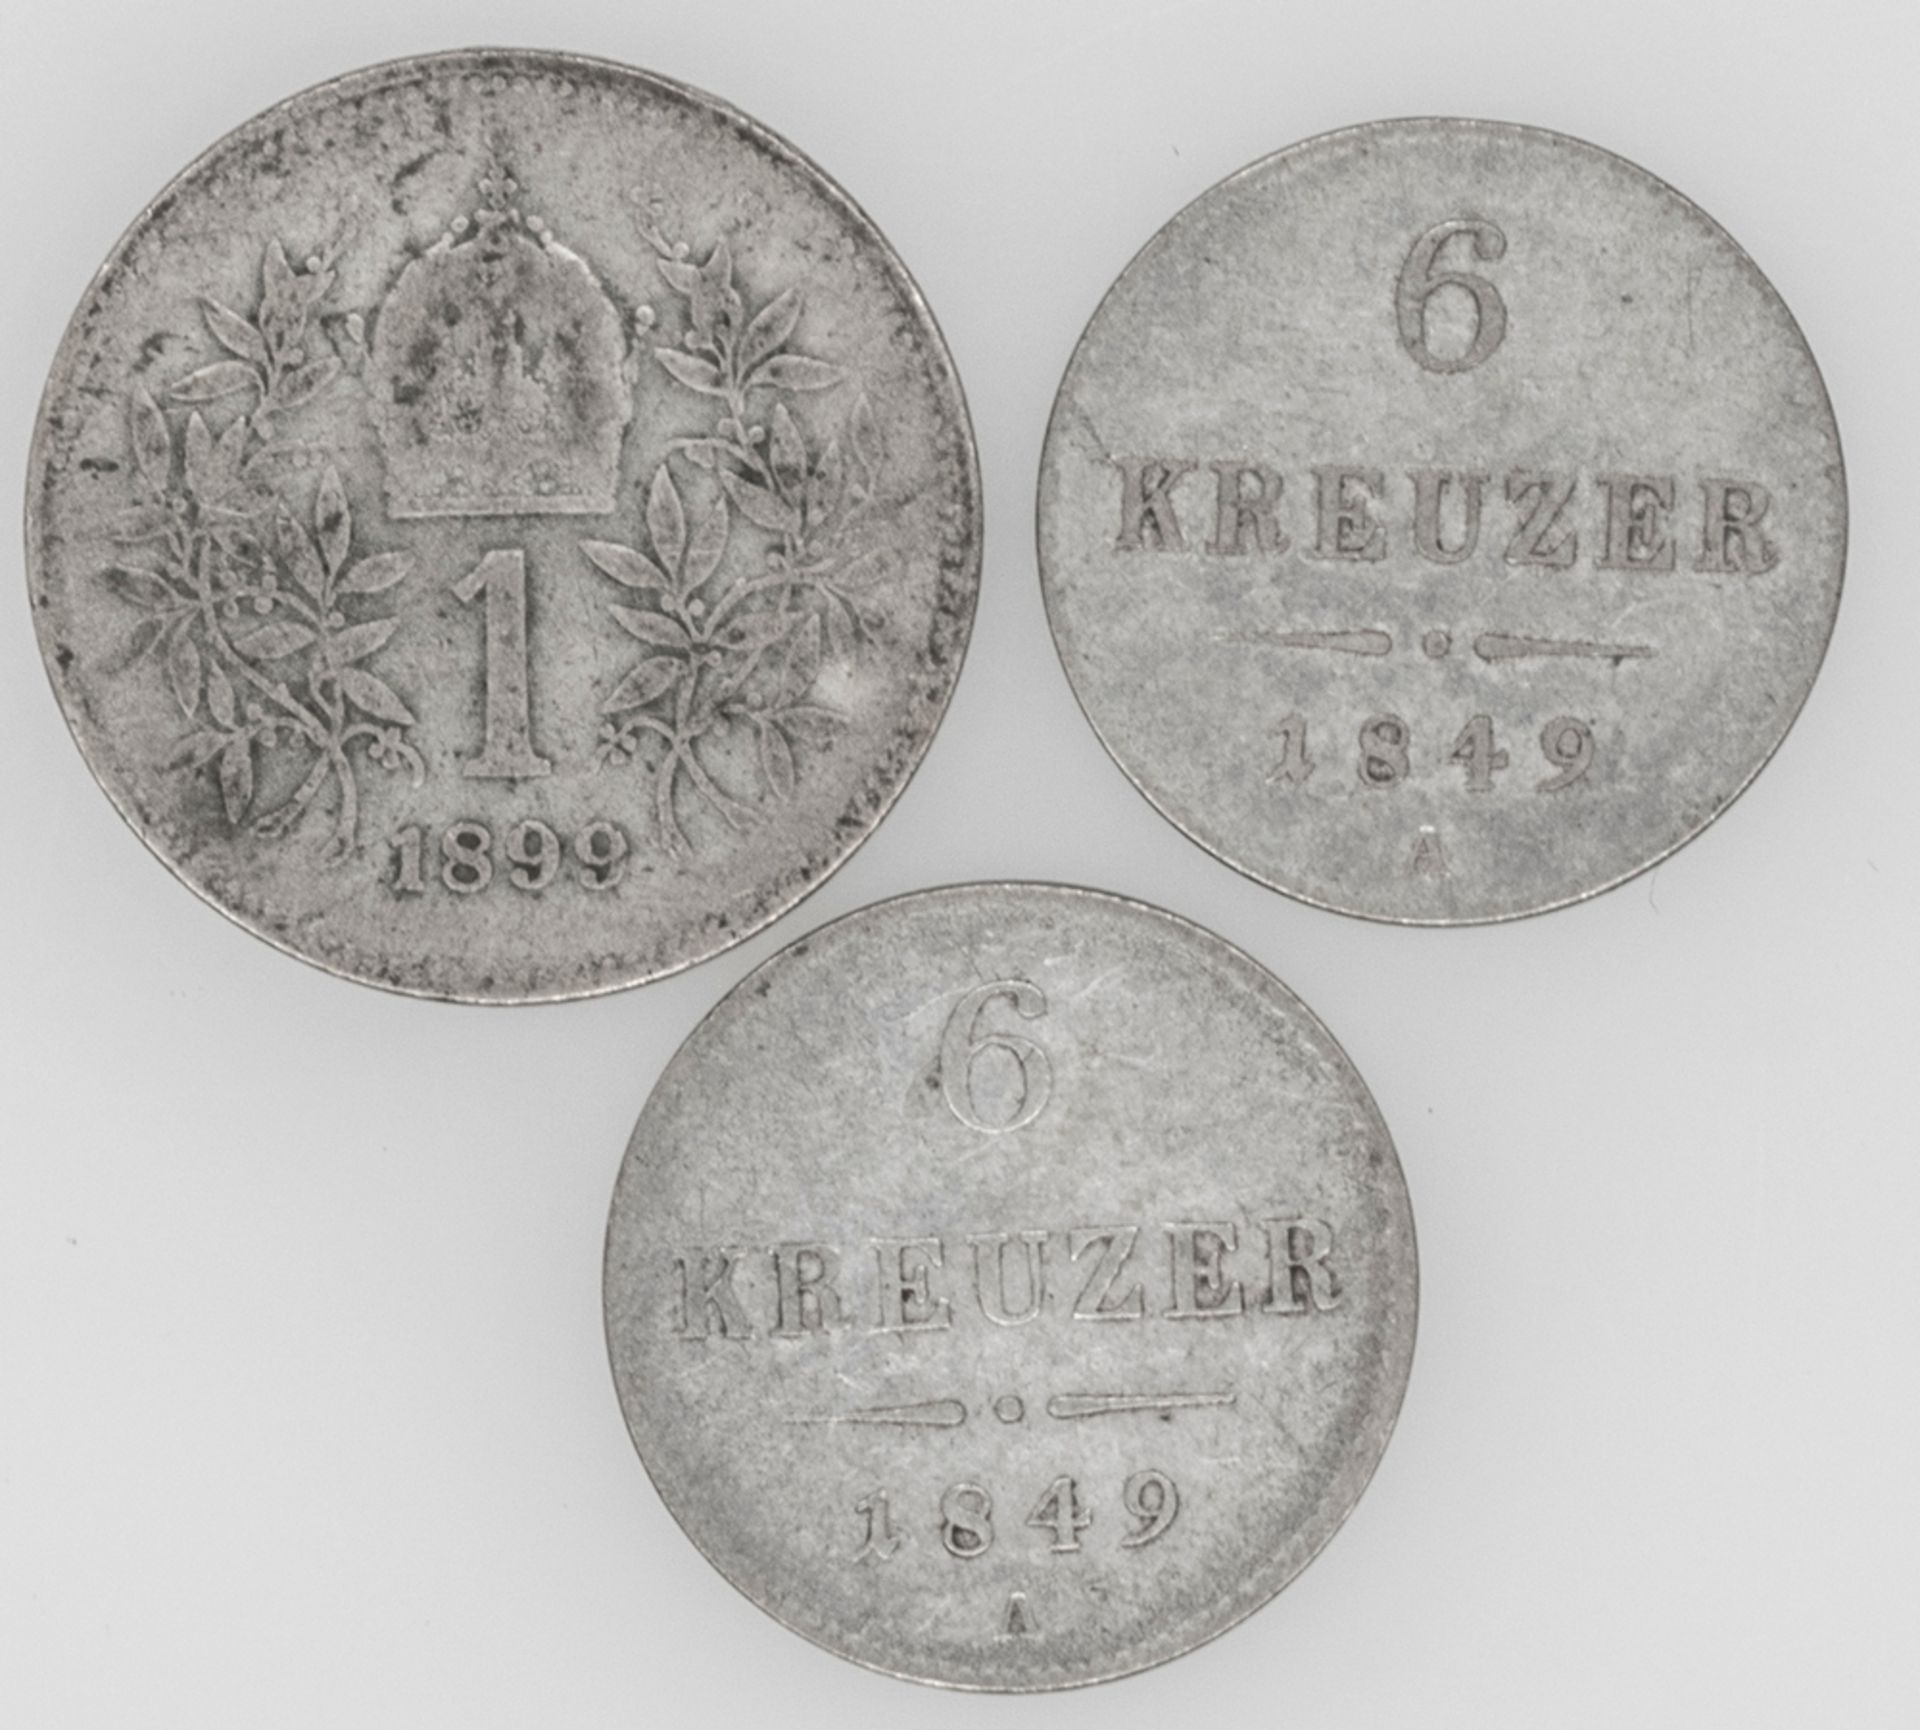 Österreich 1849/99, 2 x 6 Kreuzer 1849 und 1 x 1 Krone 1899. Erhaltung: ss.